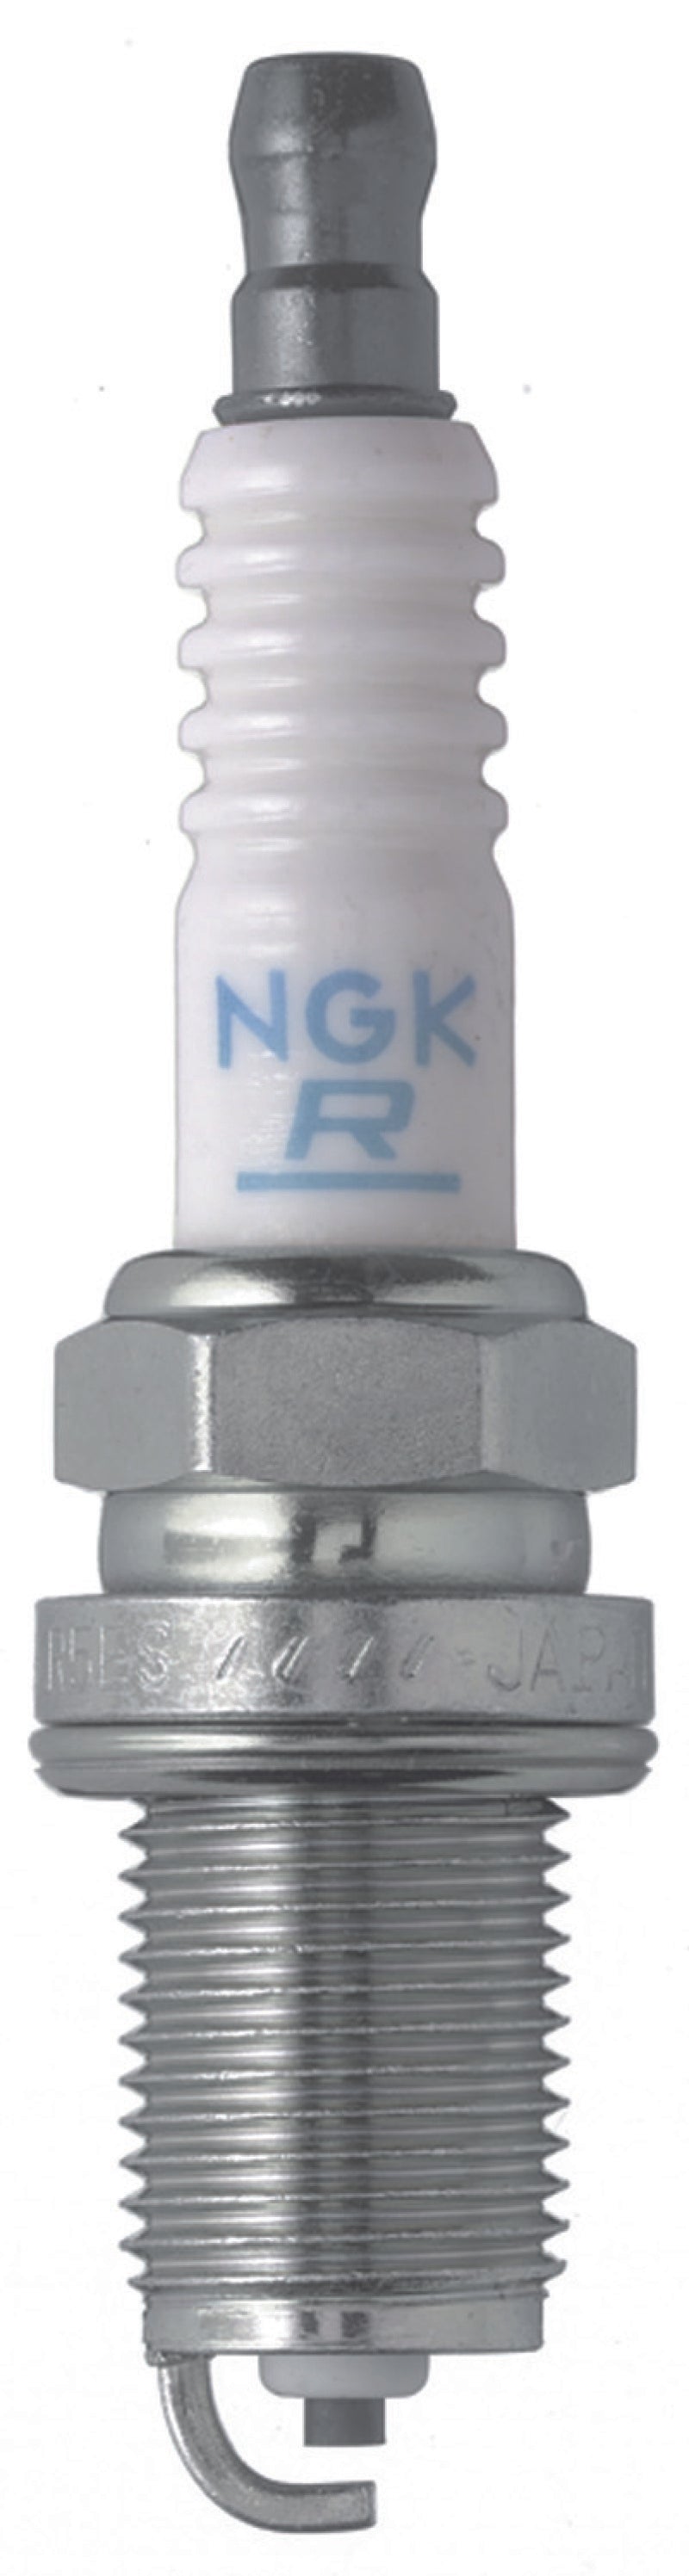 NGK Standard Spark Plug Box of 4 (BKR6ES) -  Shop now at Performance Car Parts